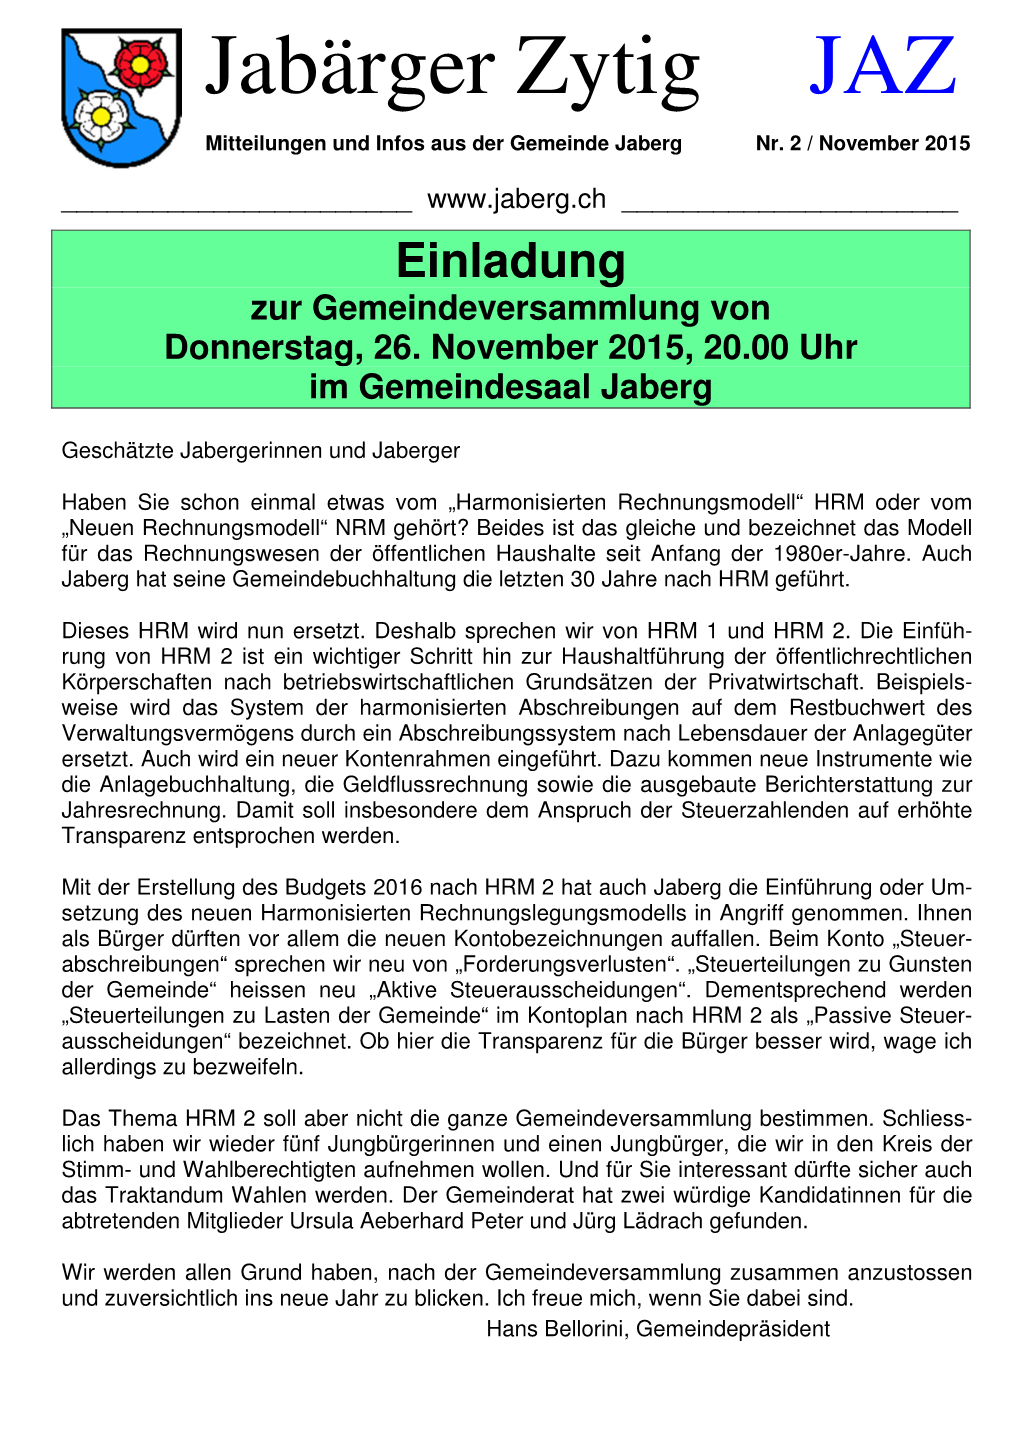 Jabärger Zytig JAZ Mitteilungen Und Infos Aus Der Gemeinde Jaberg Nr